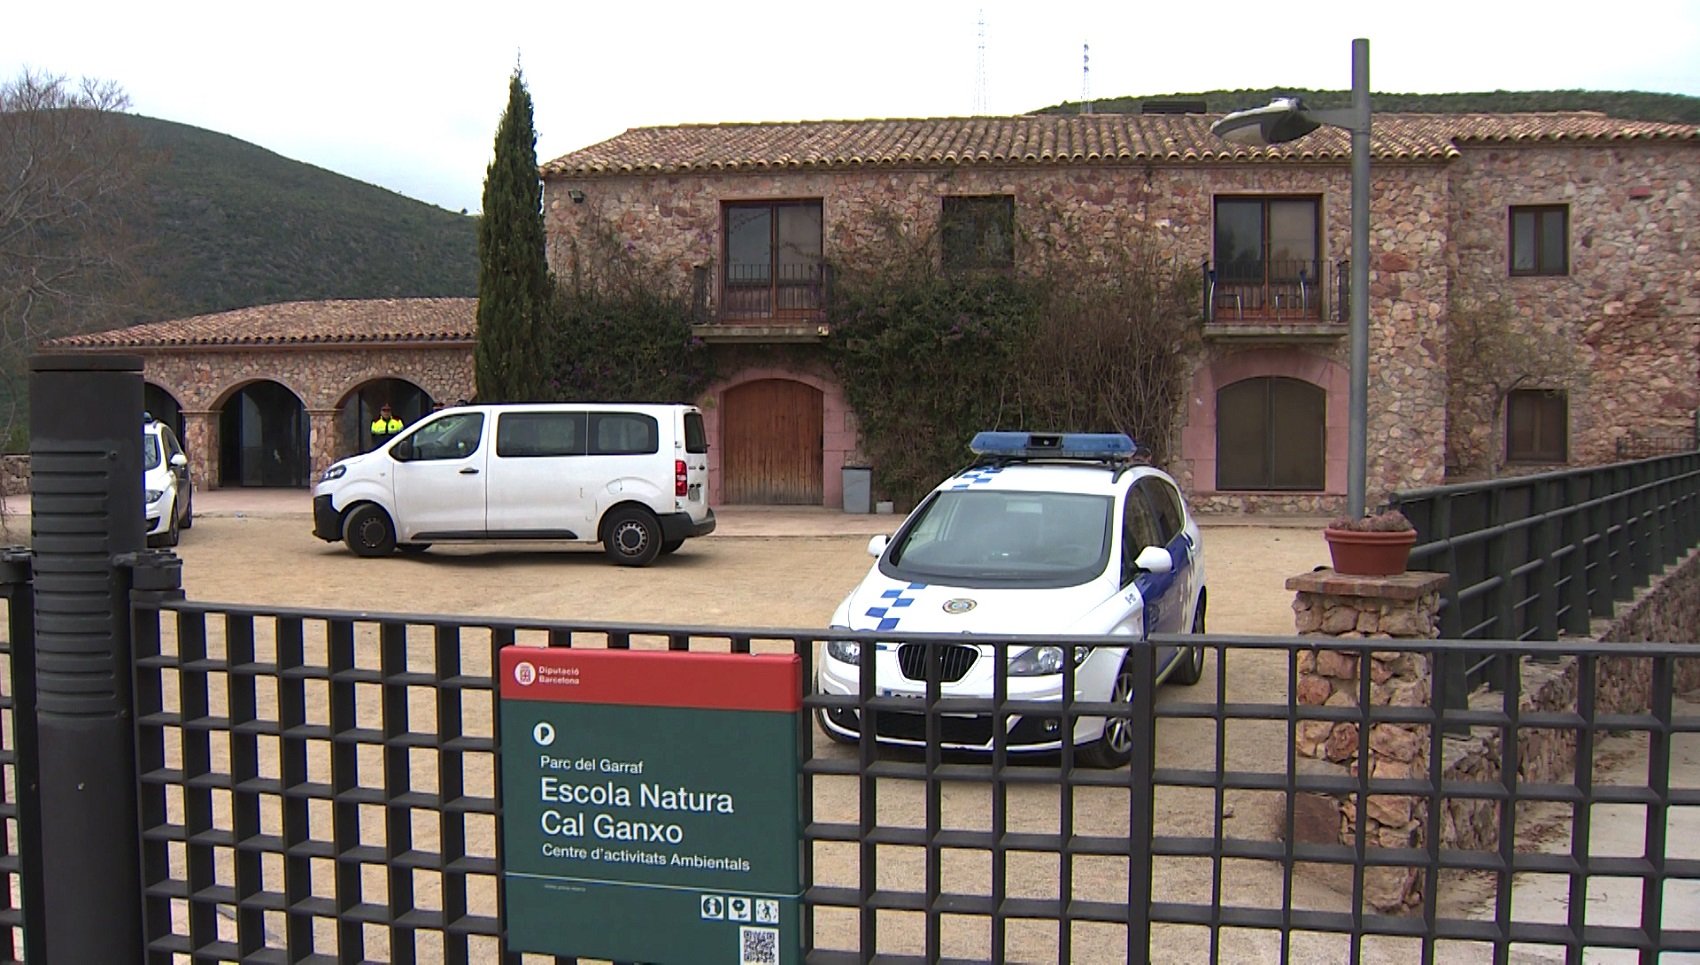 El Col·legi d'Educadors condemna "l'atac" als Mena de Castelldefels